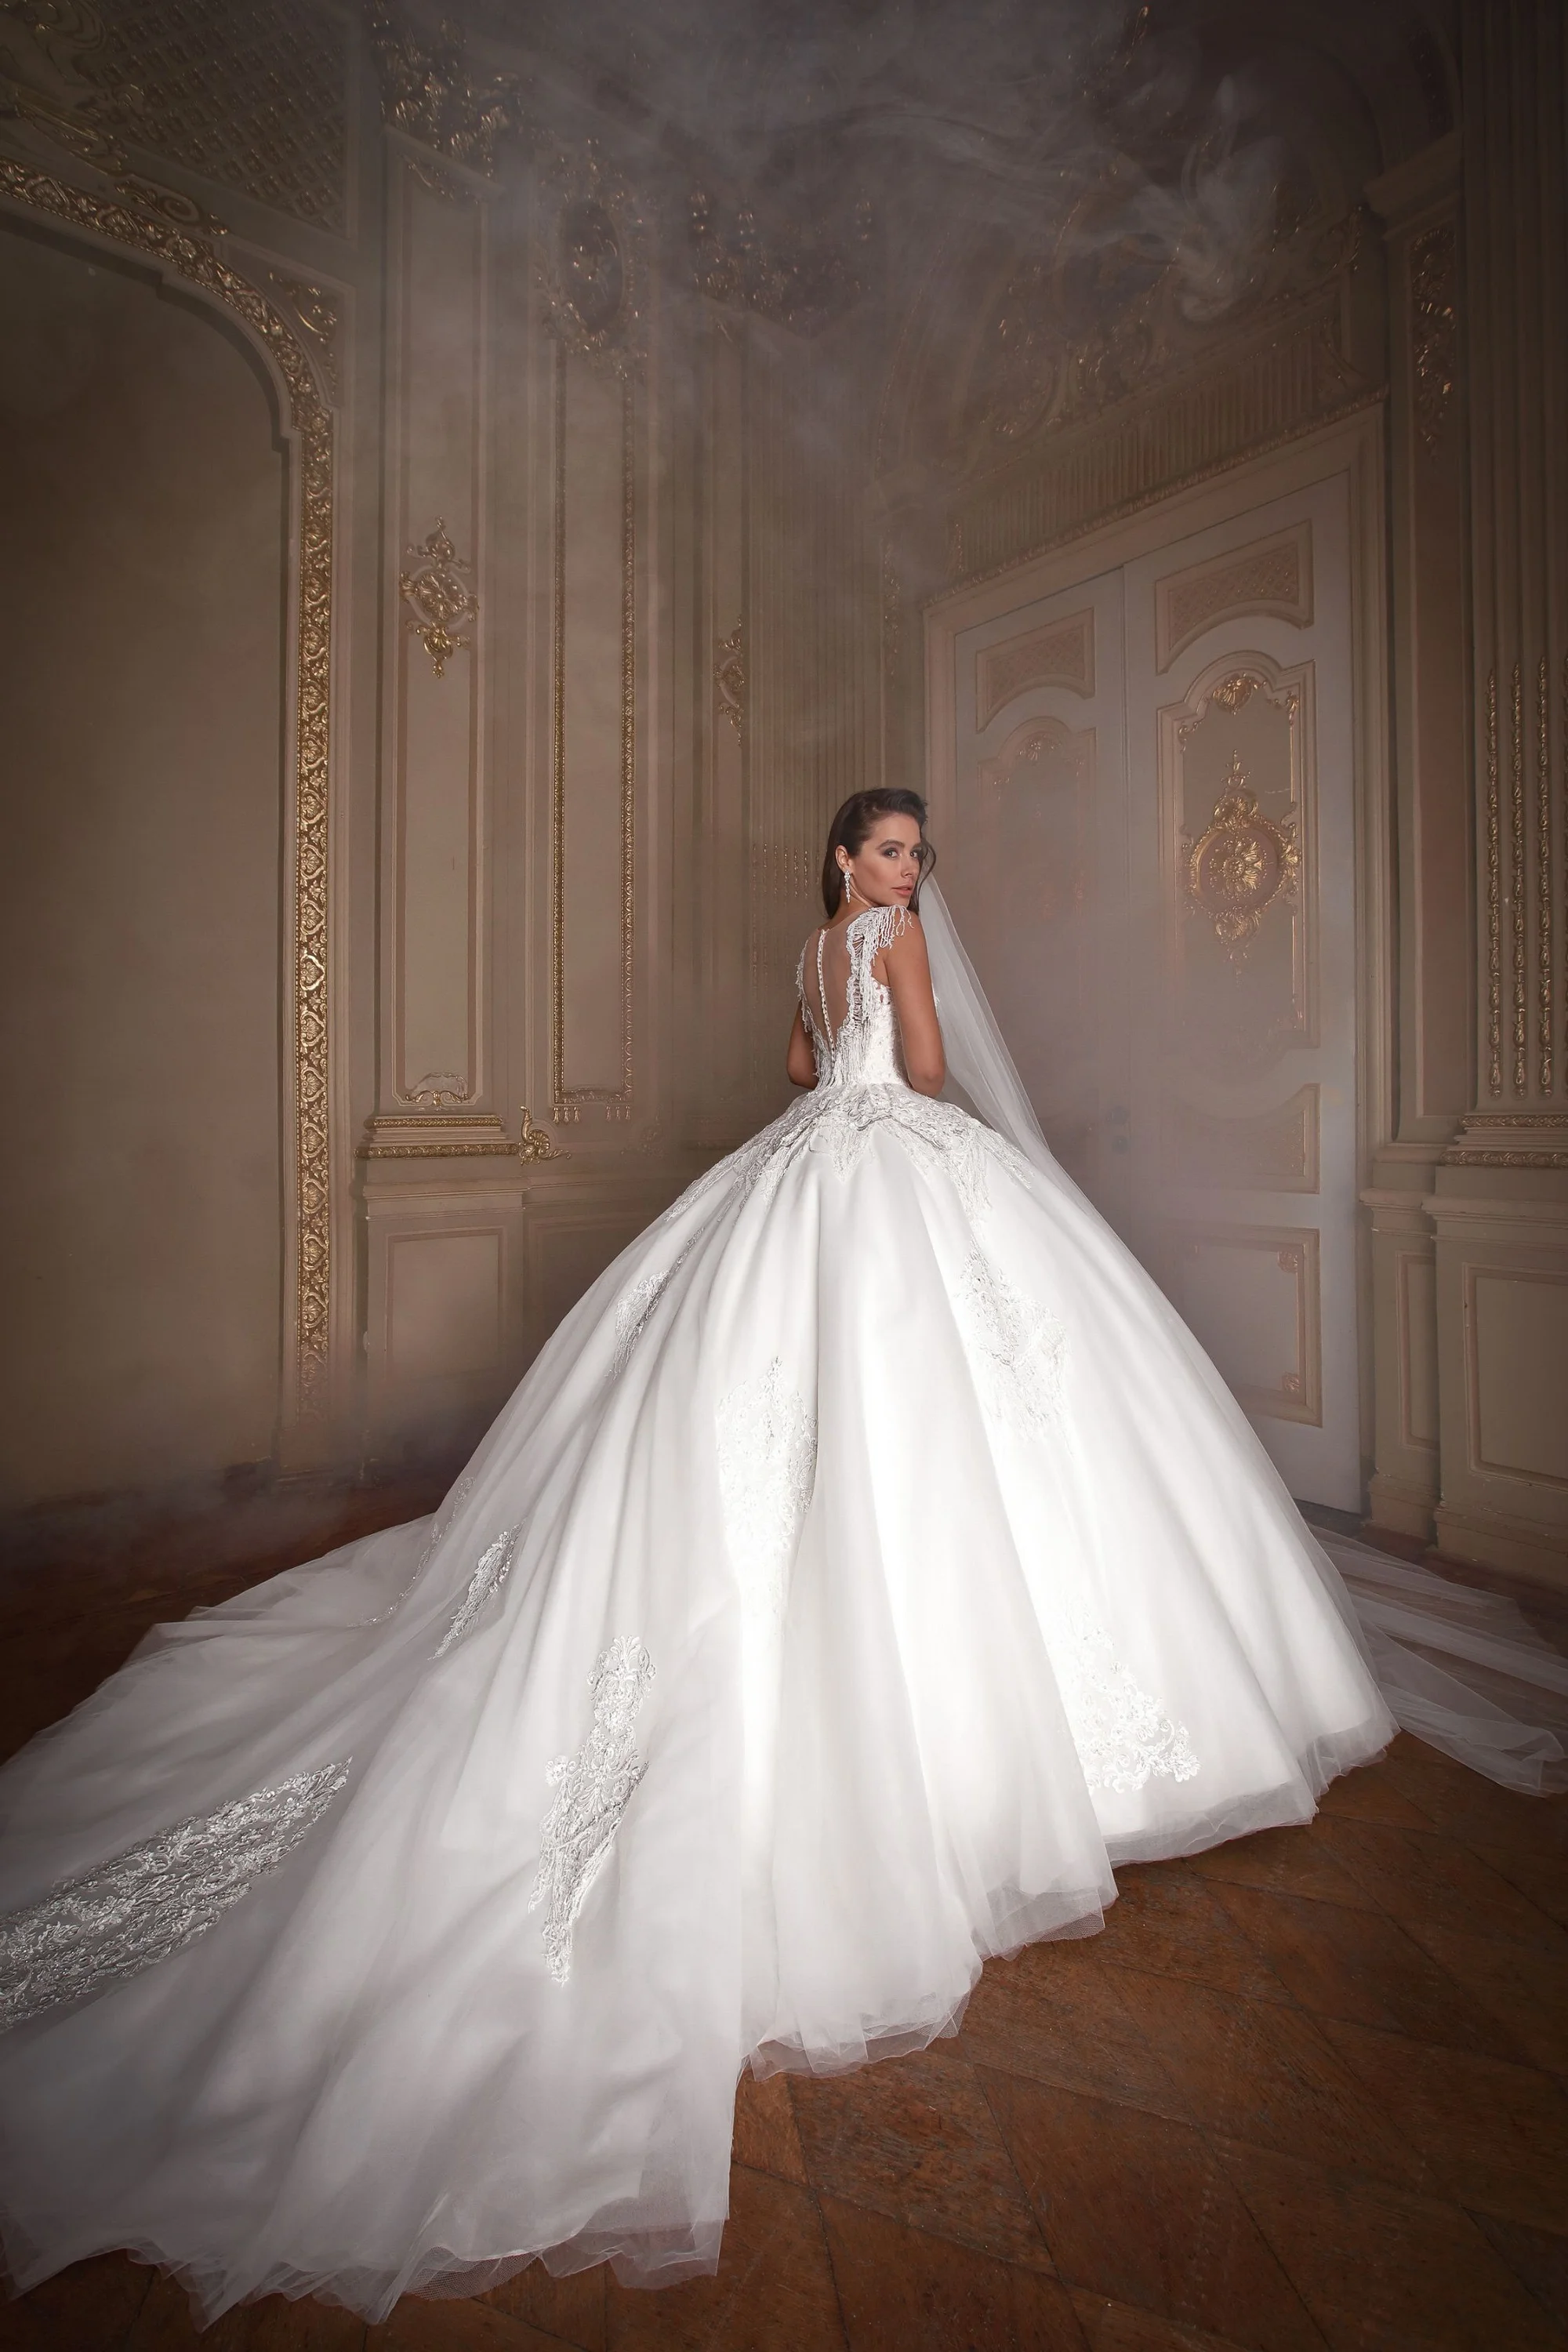 Злата Огневич и Анна Буткевич примеряли роскошные свадебные платья от Андре Тана - фото 425440